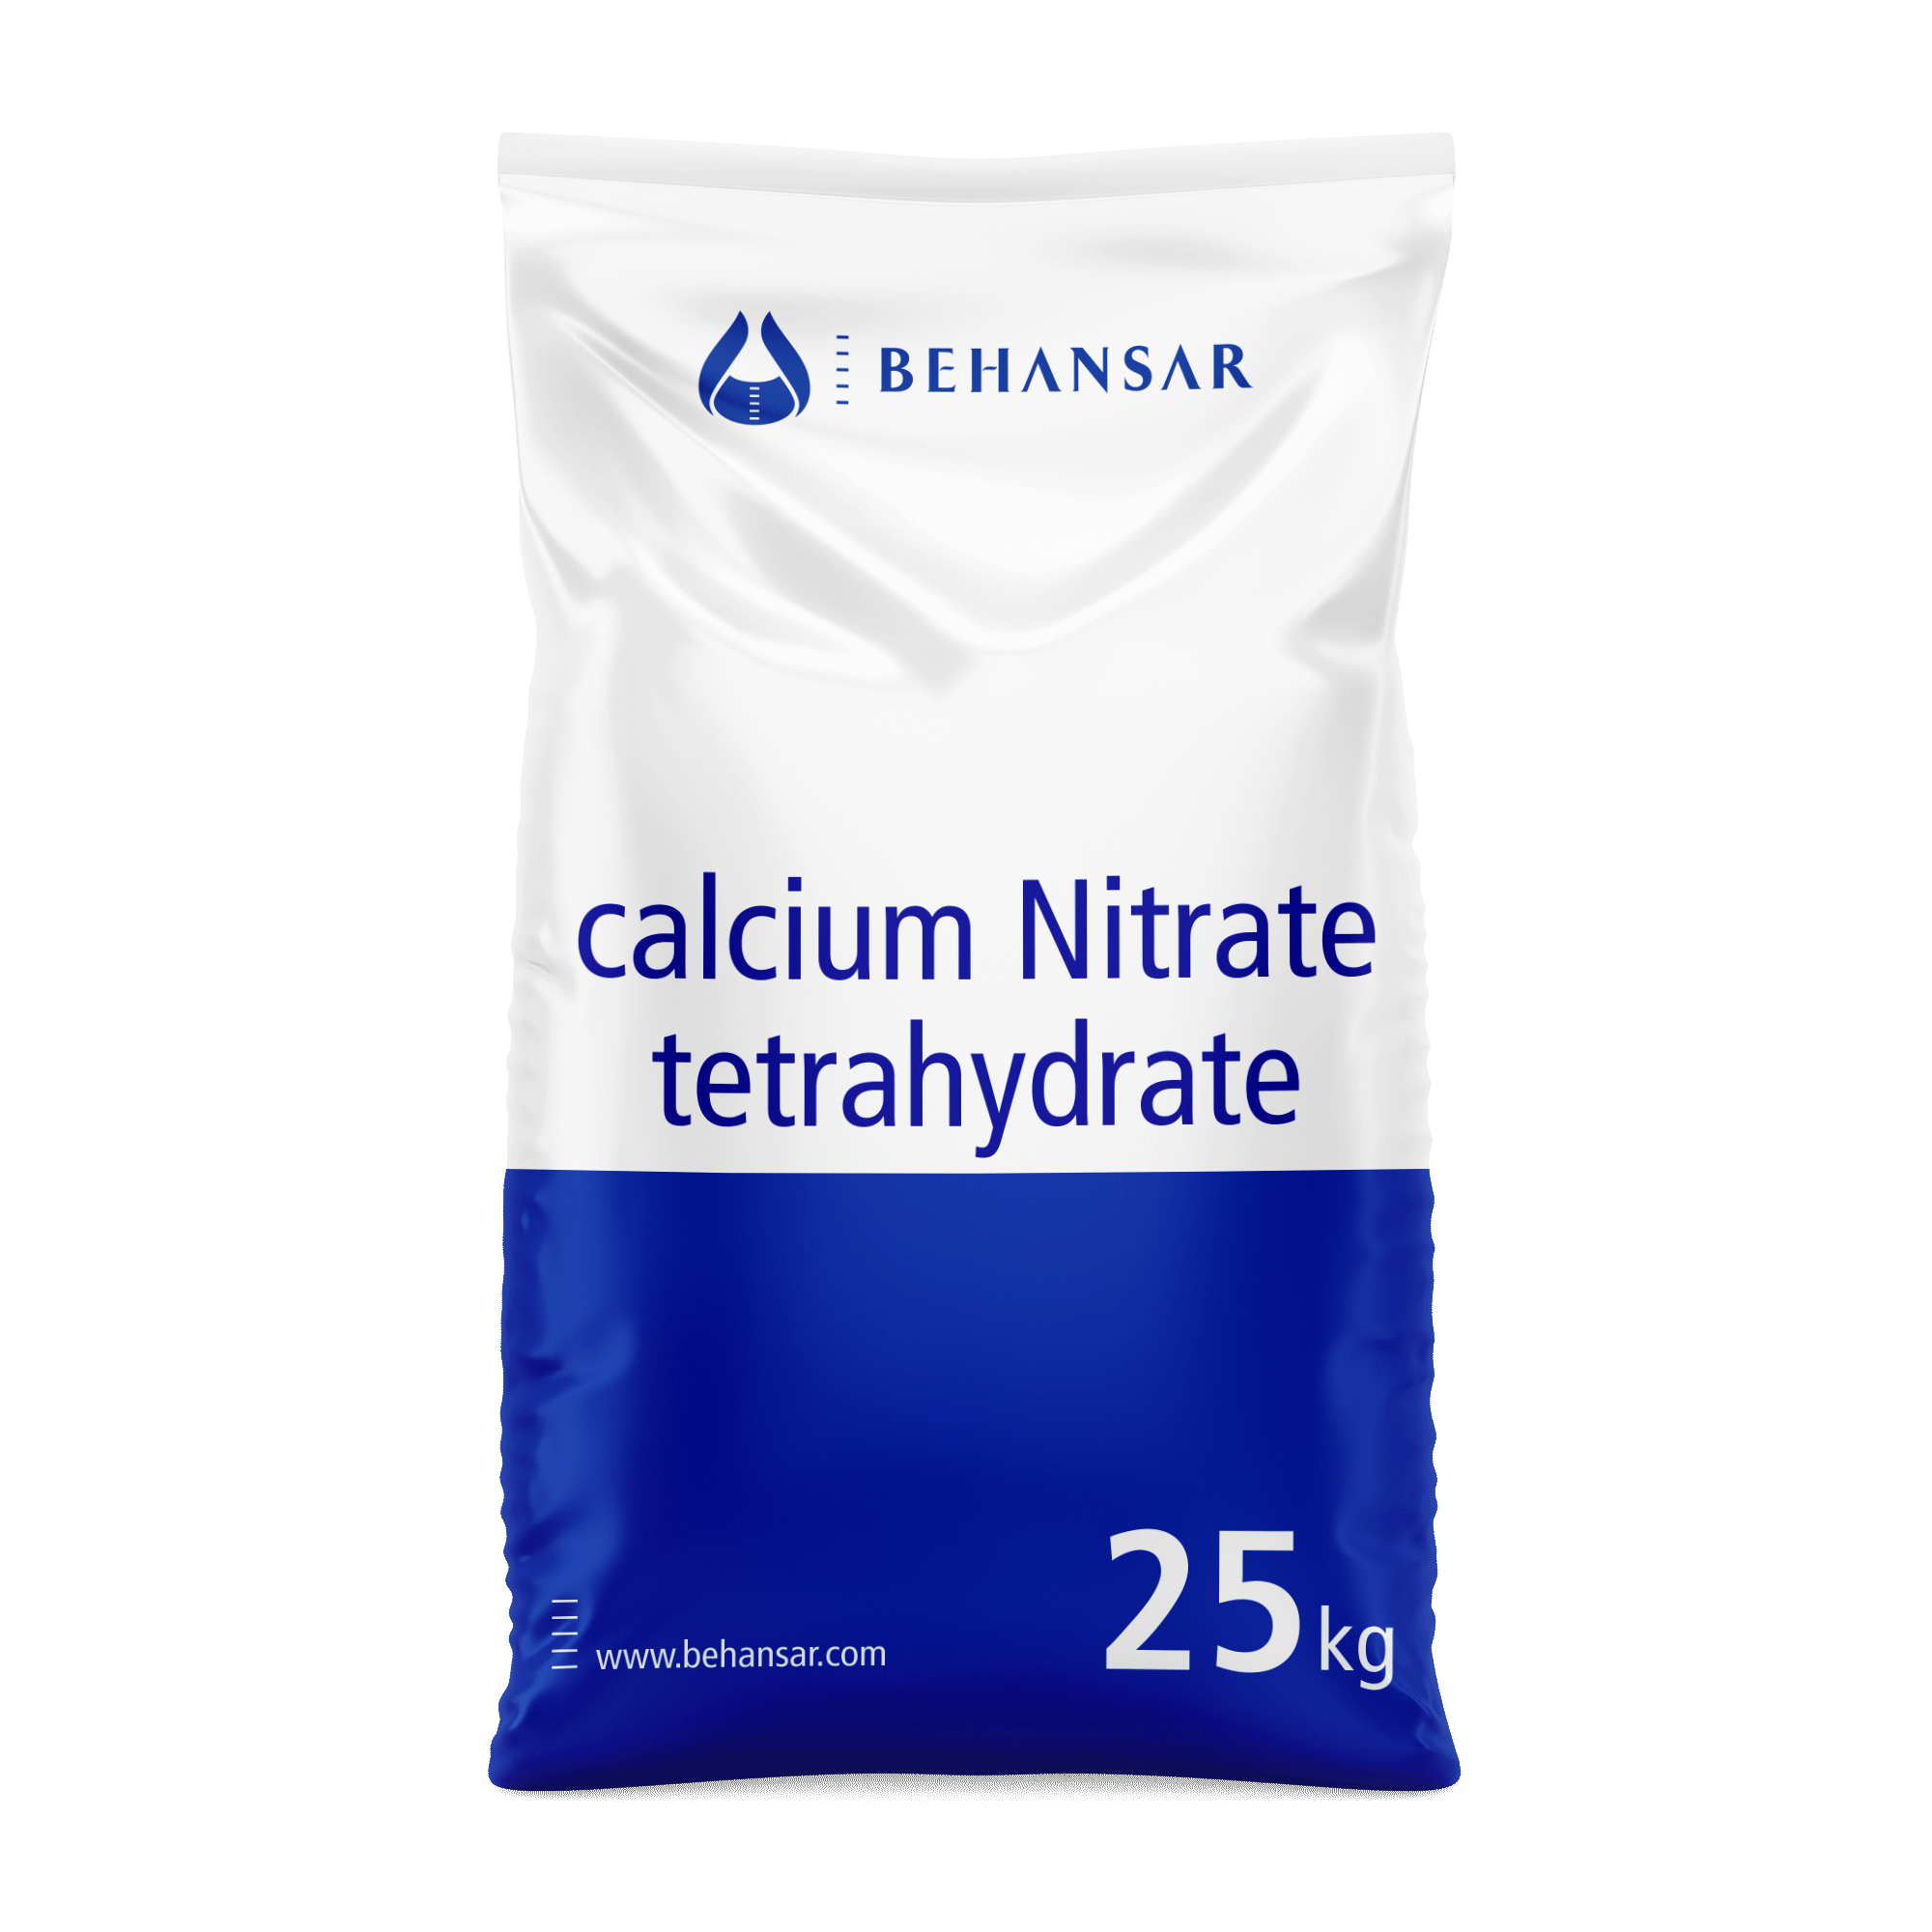 کلسیم نیترات تترا هیدرات یکی از تولیدات شرکت بهانسار است